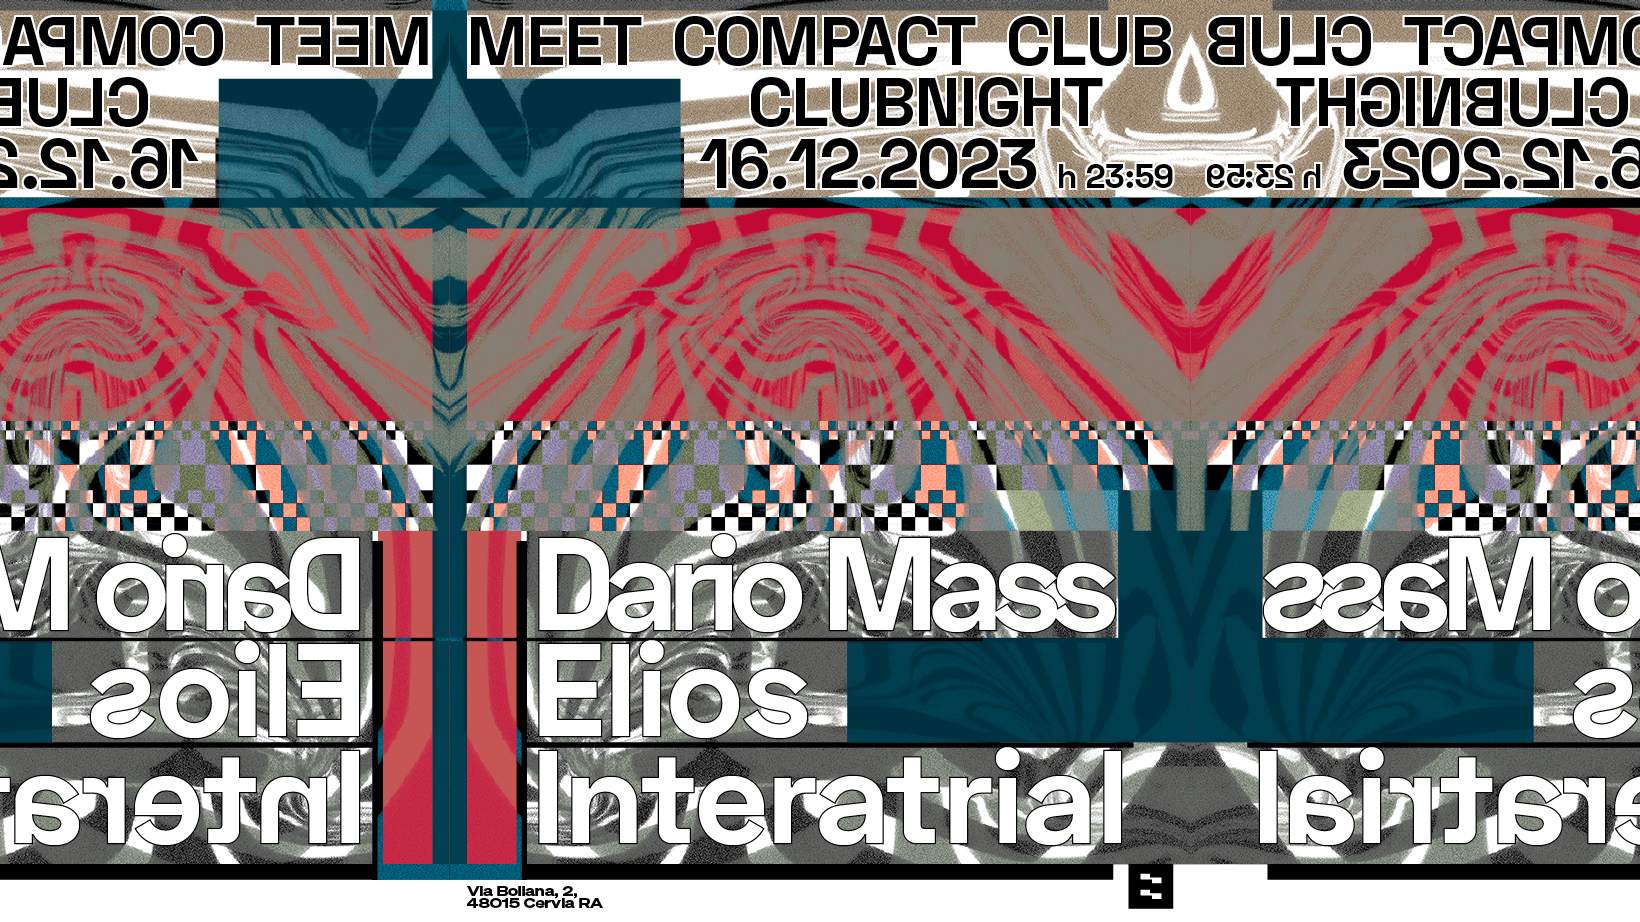 Meet Compact Club with Dario Mass, Elios & Interatrial - Página frontal